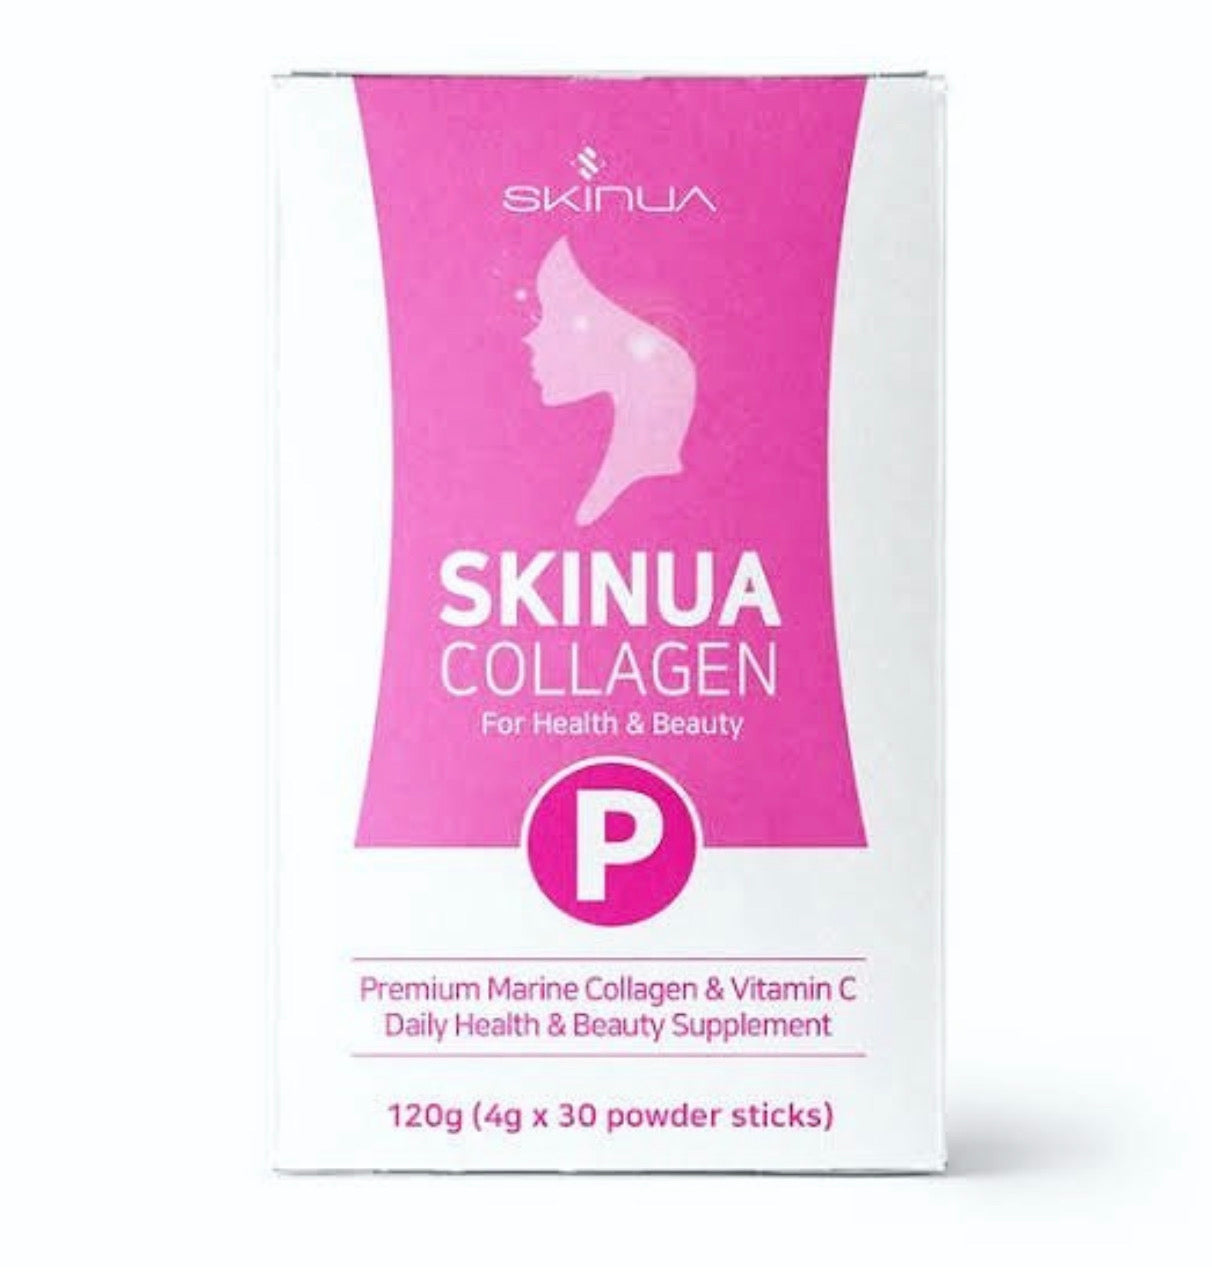 SKINUA Collagen Powder sticks